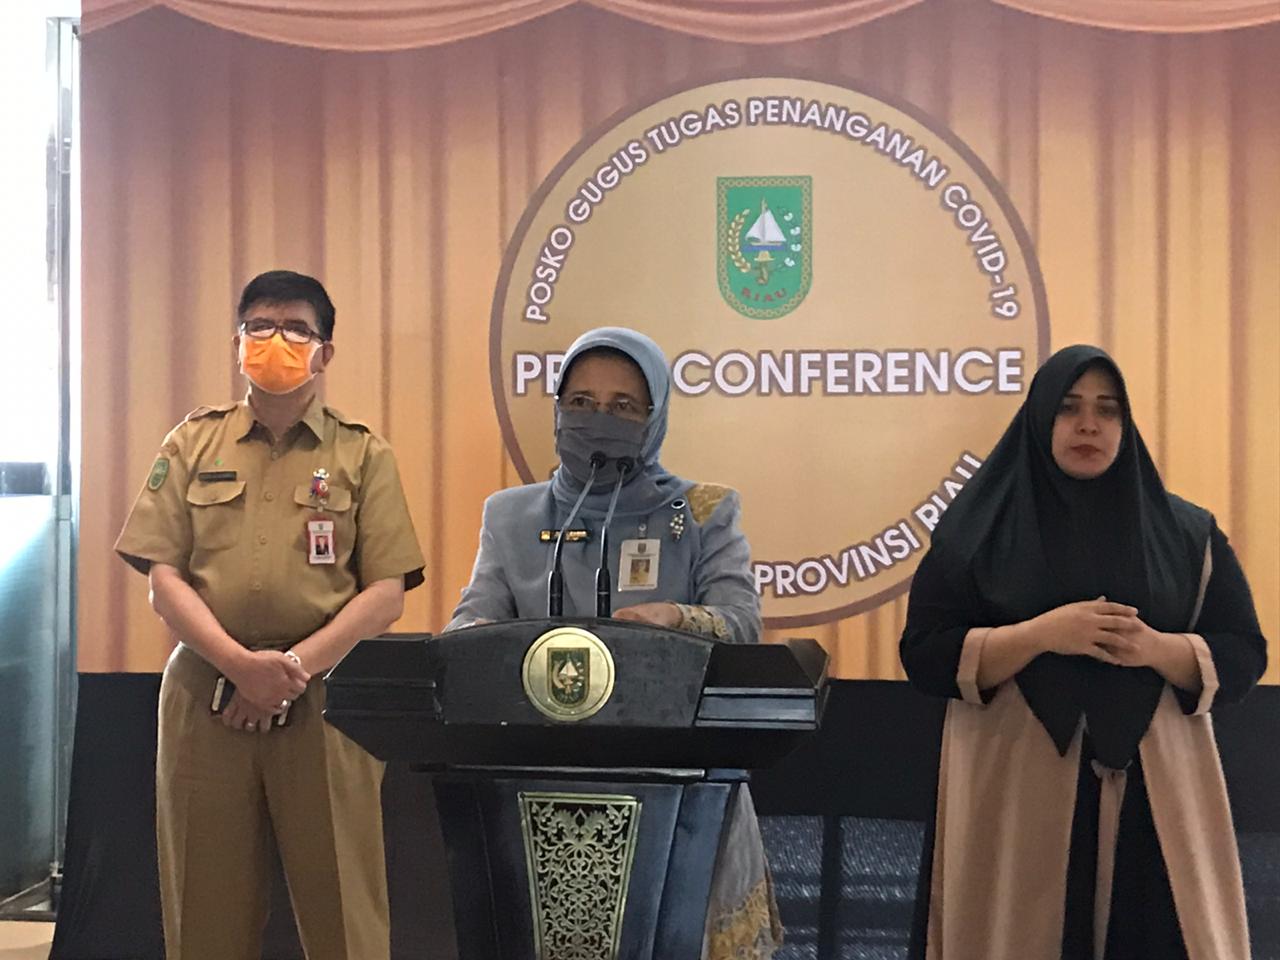 Kasus Positif Covid-19 di Riau Masih Tinggi, Berasal dari Klaster Keluarga dan Kantor